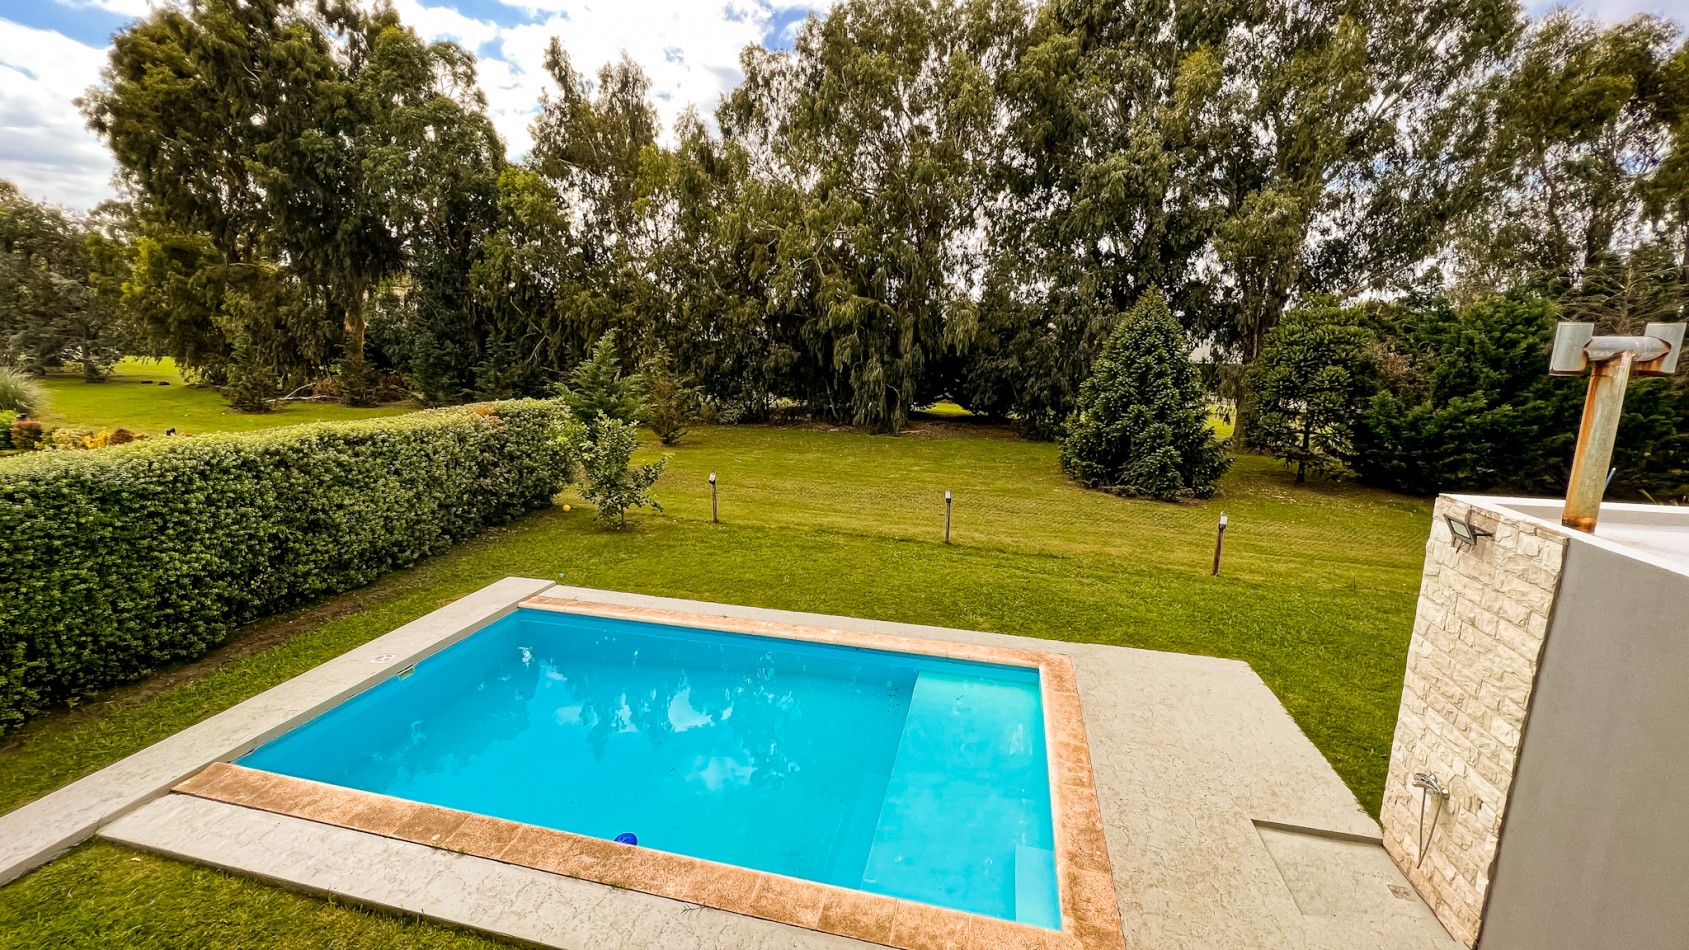 Venta Casa 4 ambientes Rumenco con piscina climatizada